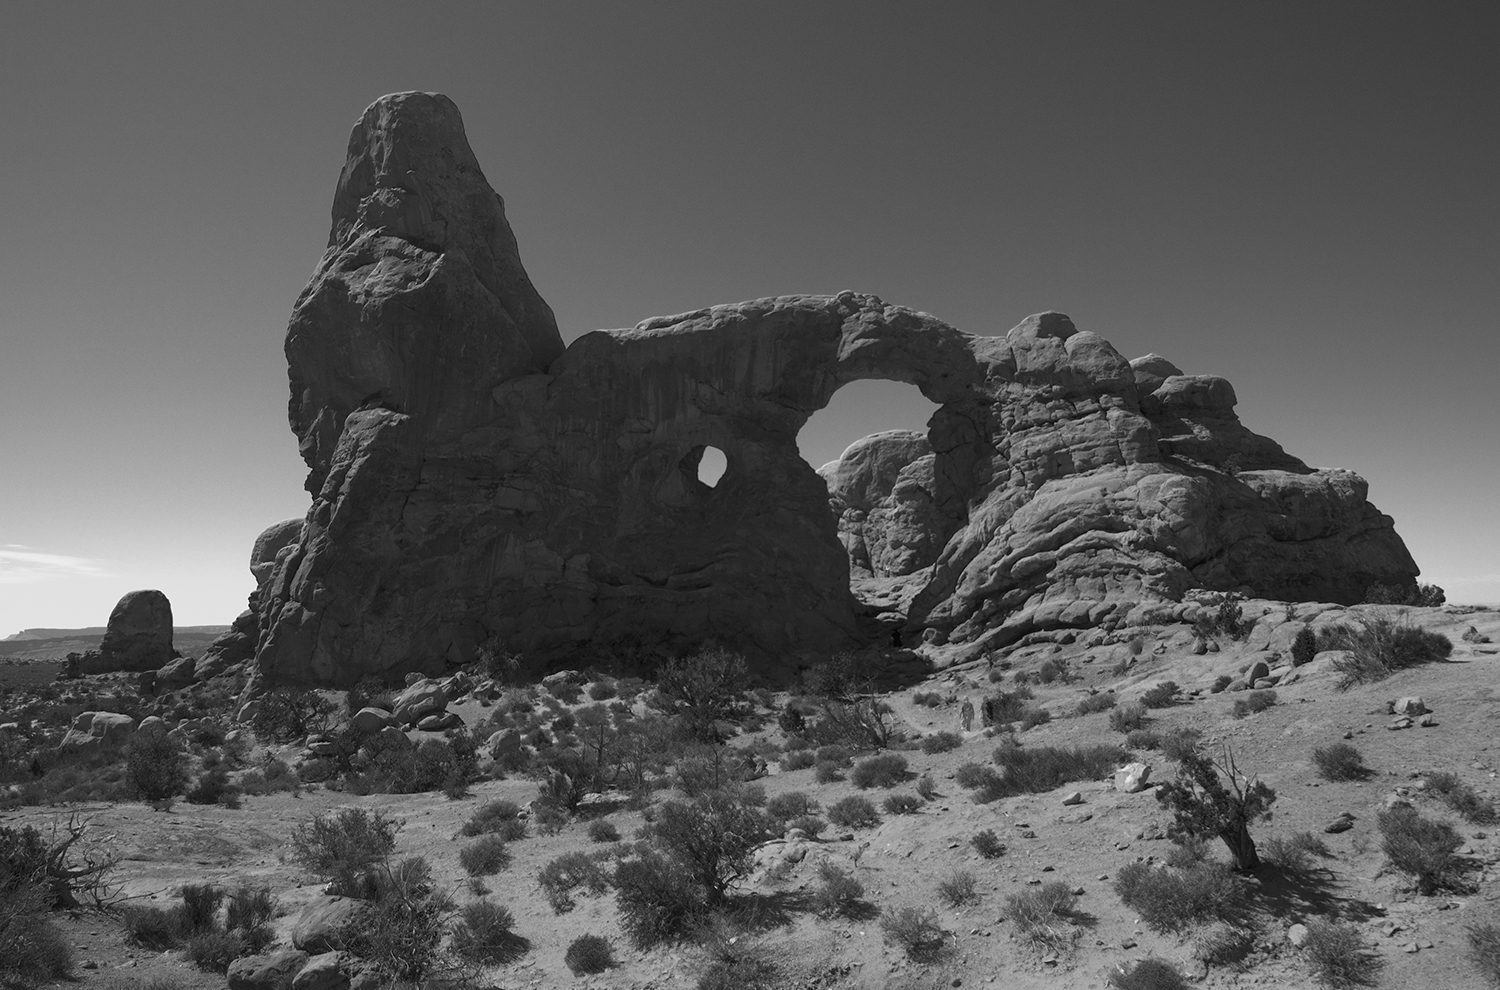 Moab rocks, Ut